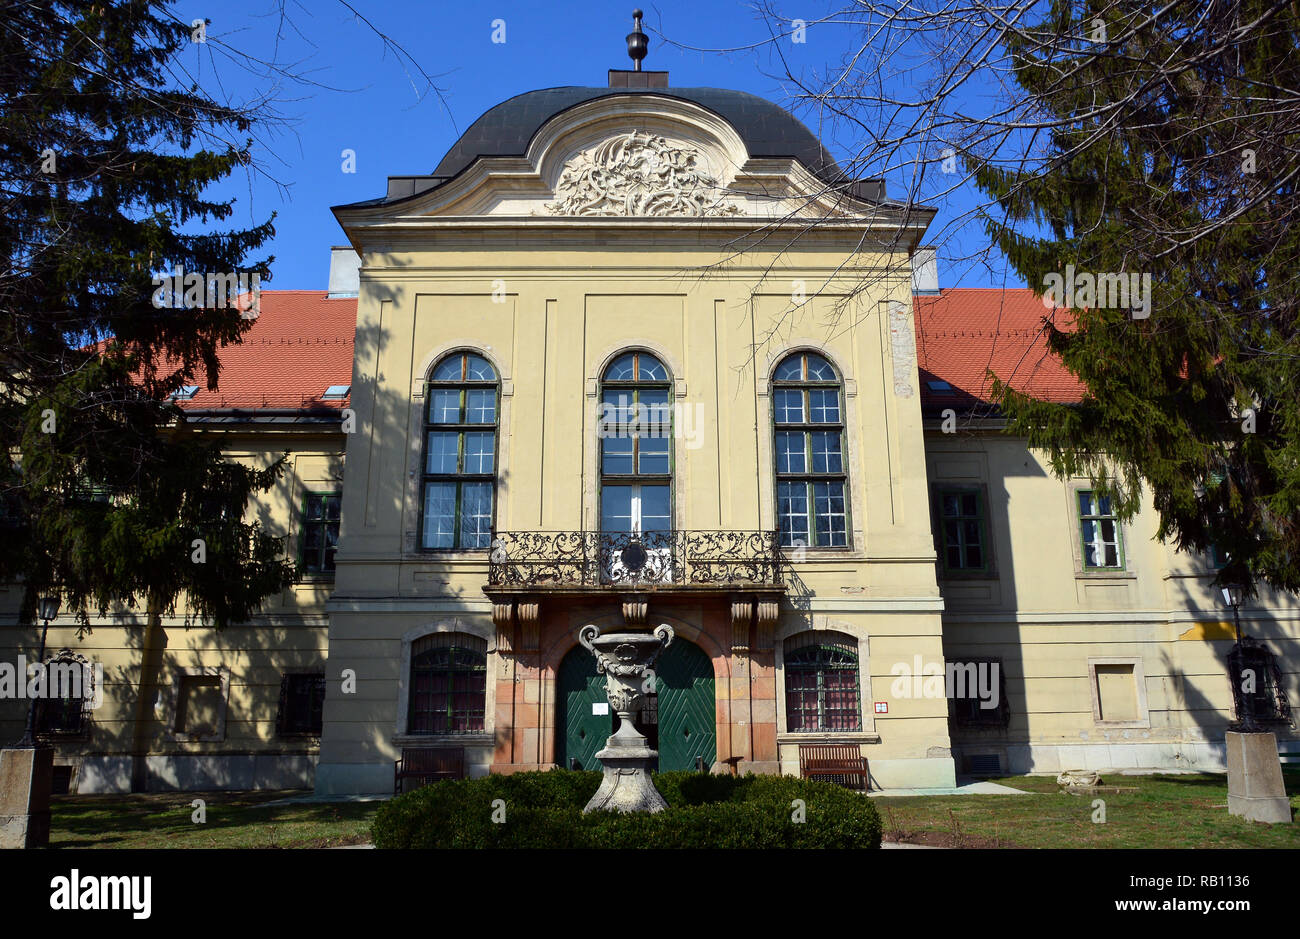 Ráday Palace, Pécel, Komitat Pest, Ungarn, Magyarország, Europa Stockfoto